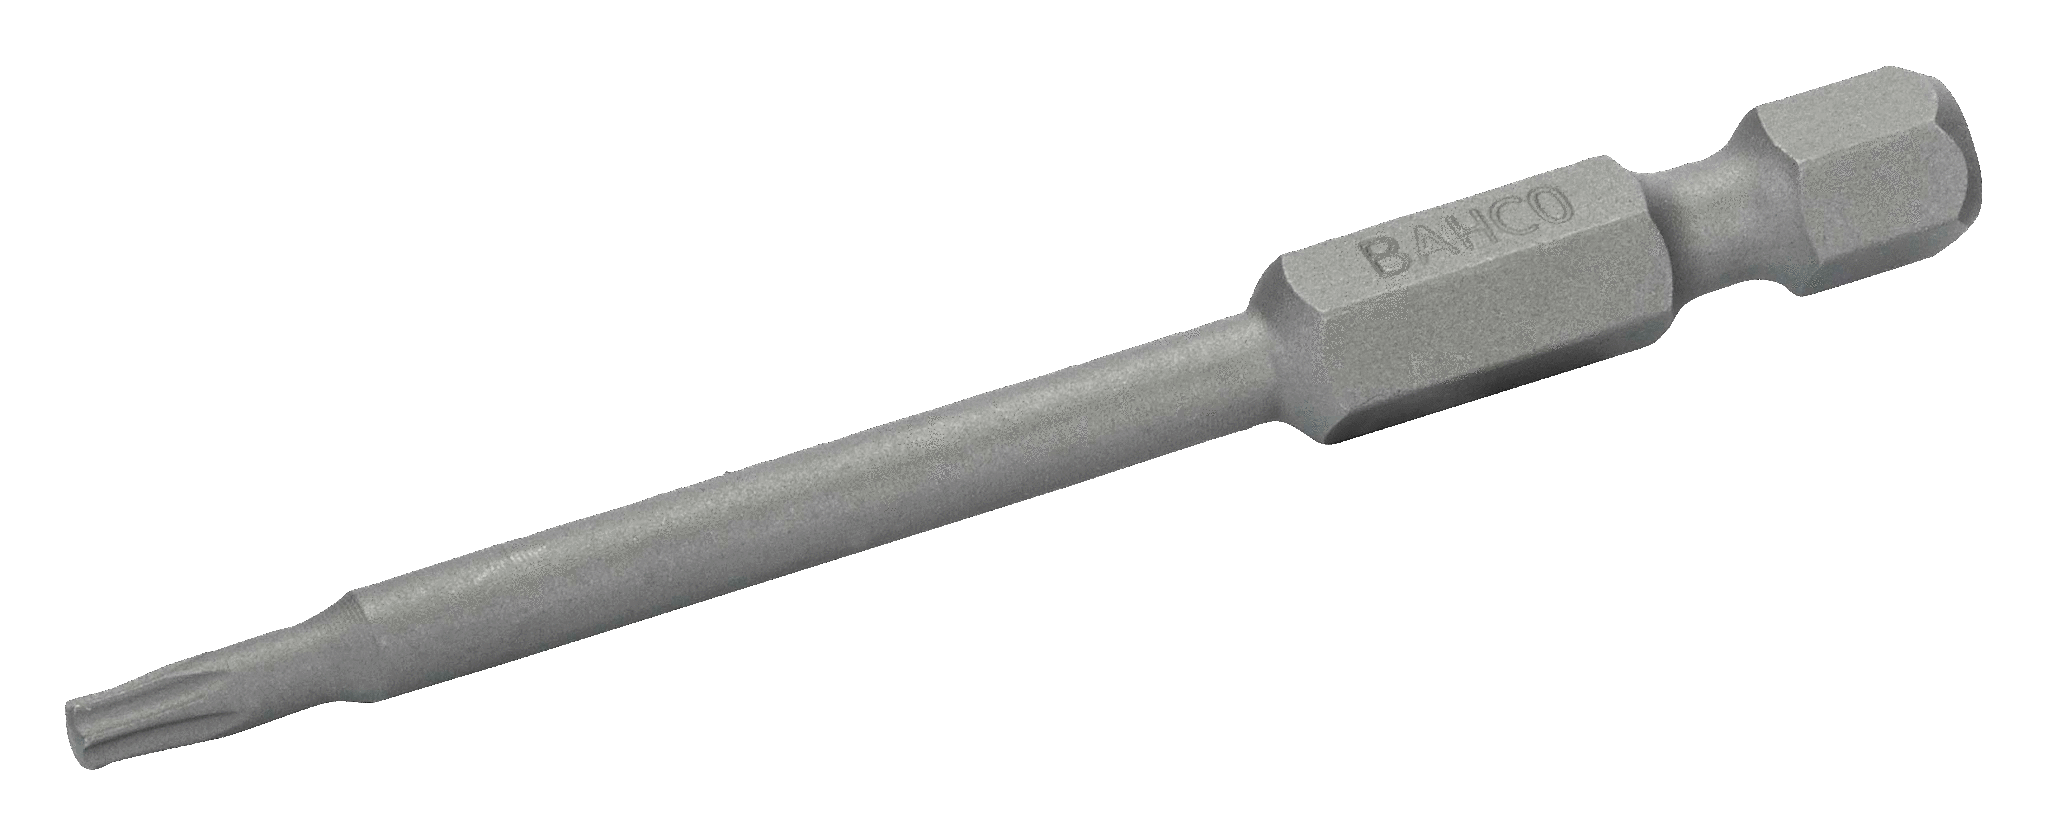 картинка Стандартные биты для отверток Torx®, 70 мм BAHCO 59S/70T30-2P от магазина "Элит-инструмент"